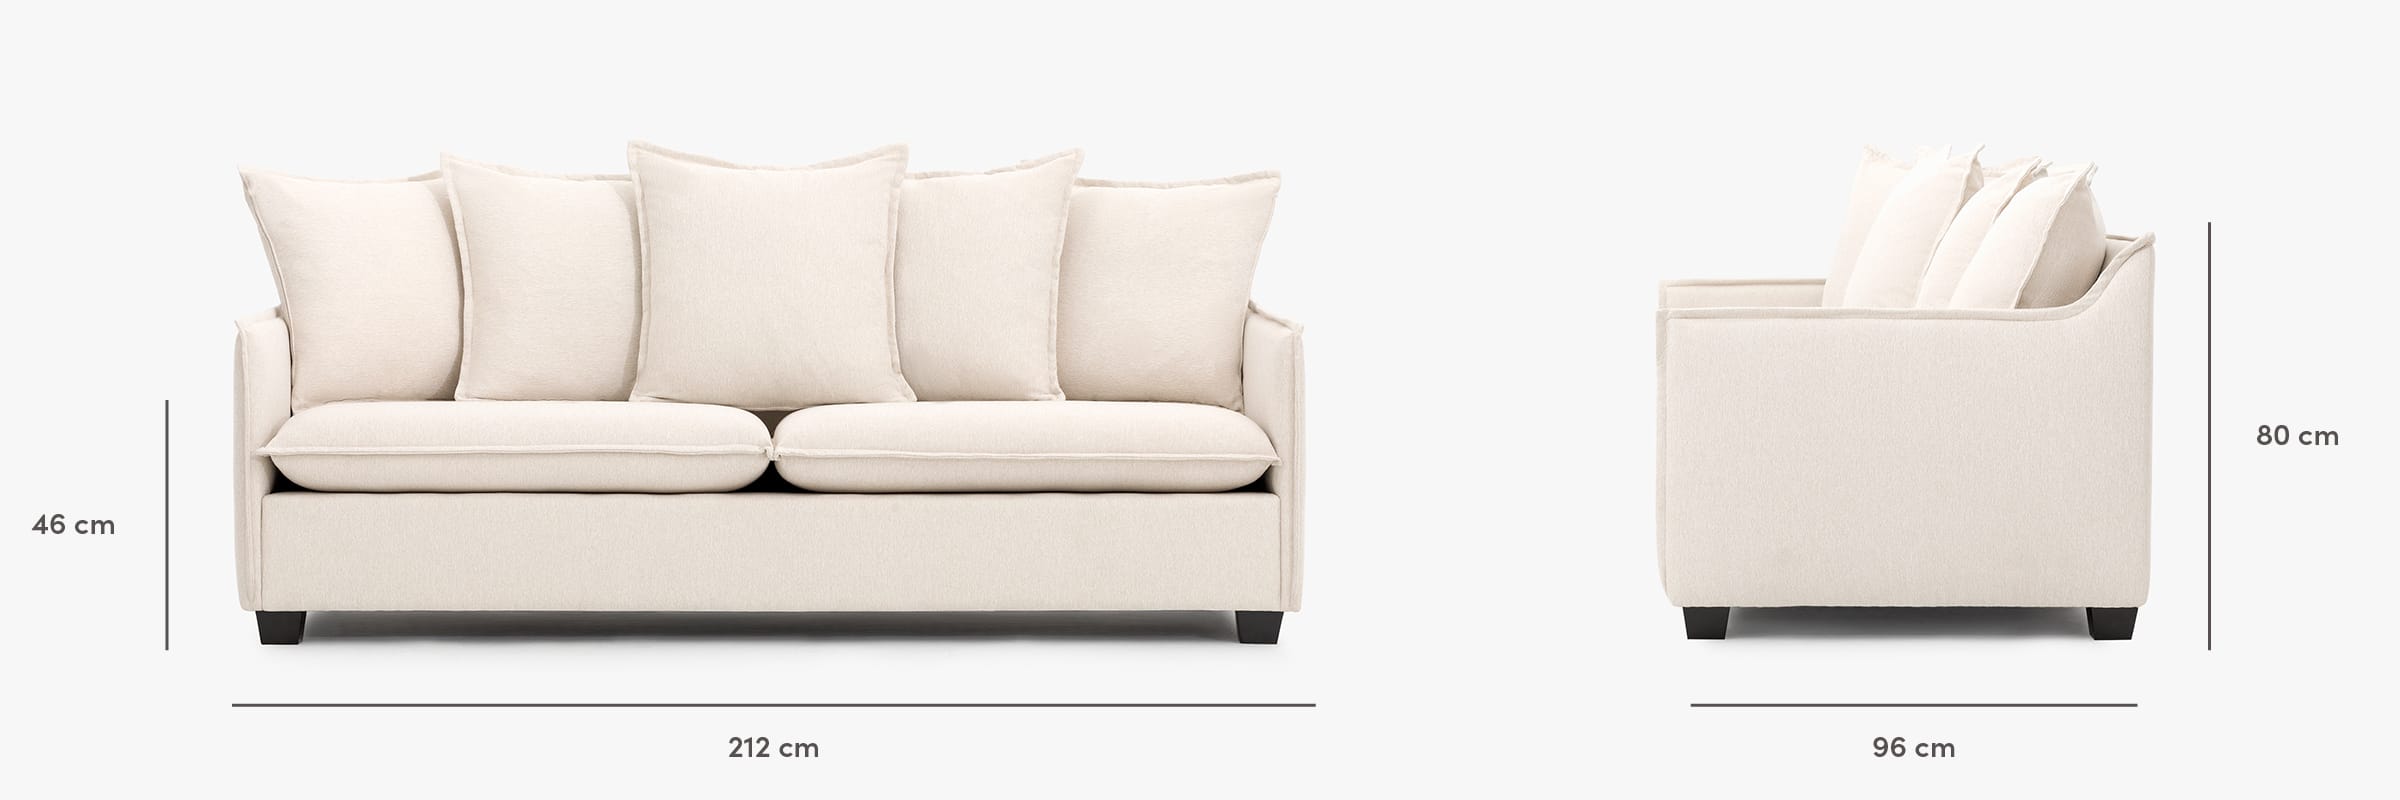 The Miami Sofa dimensions